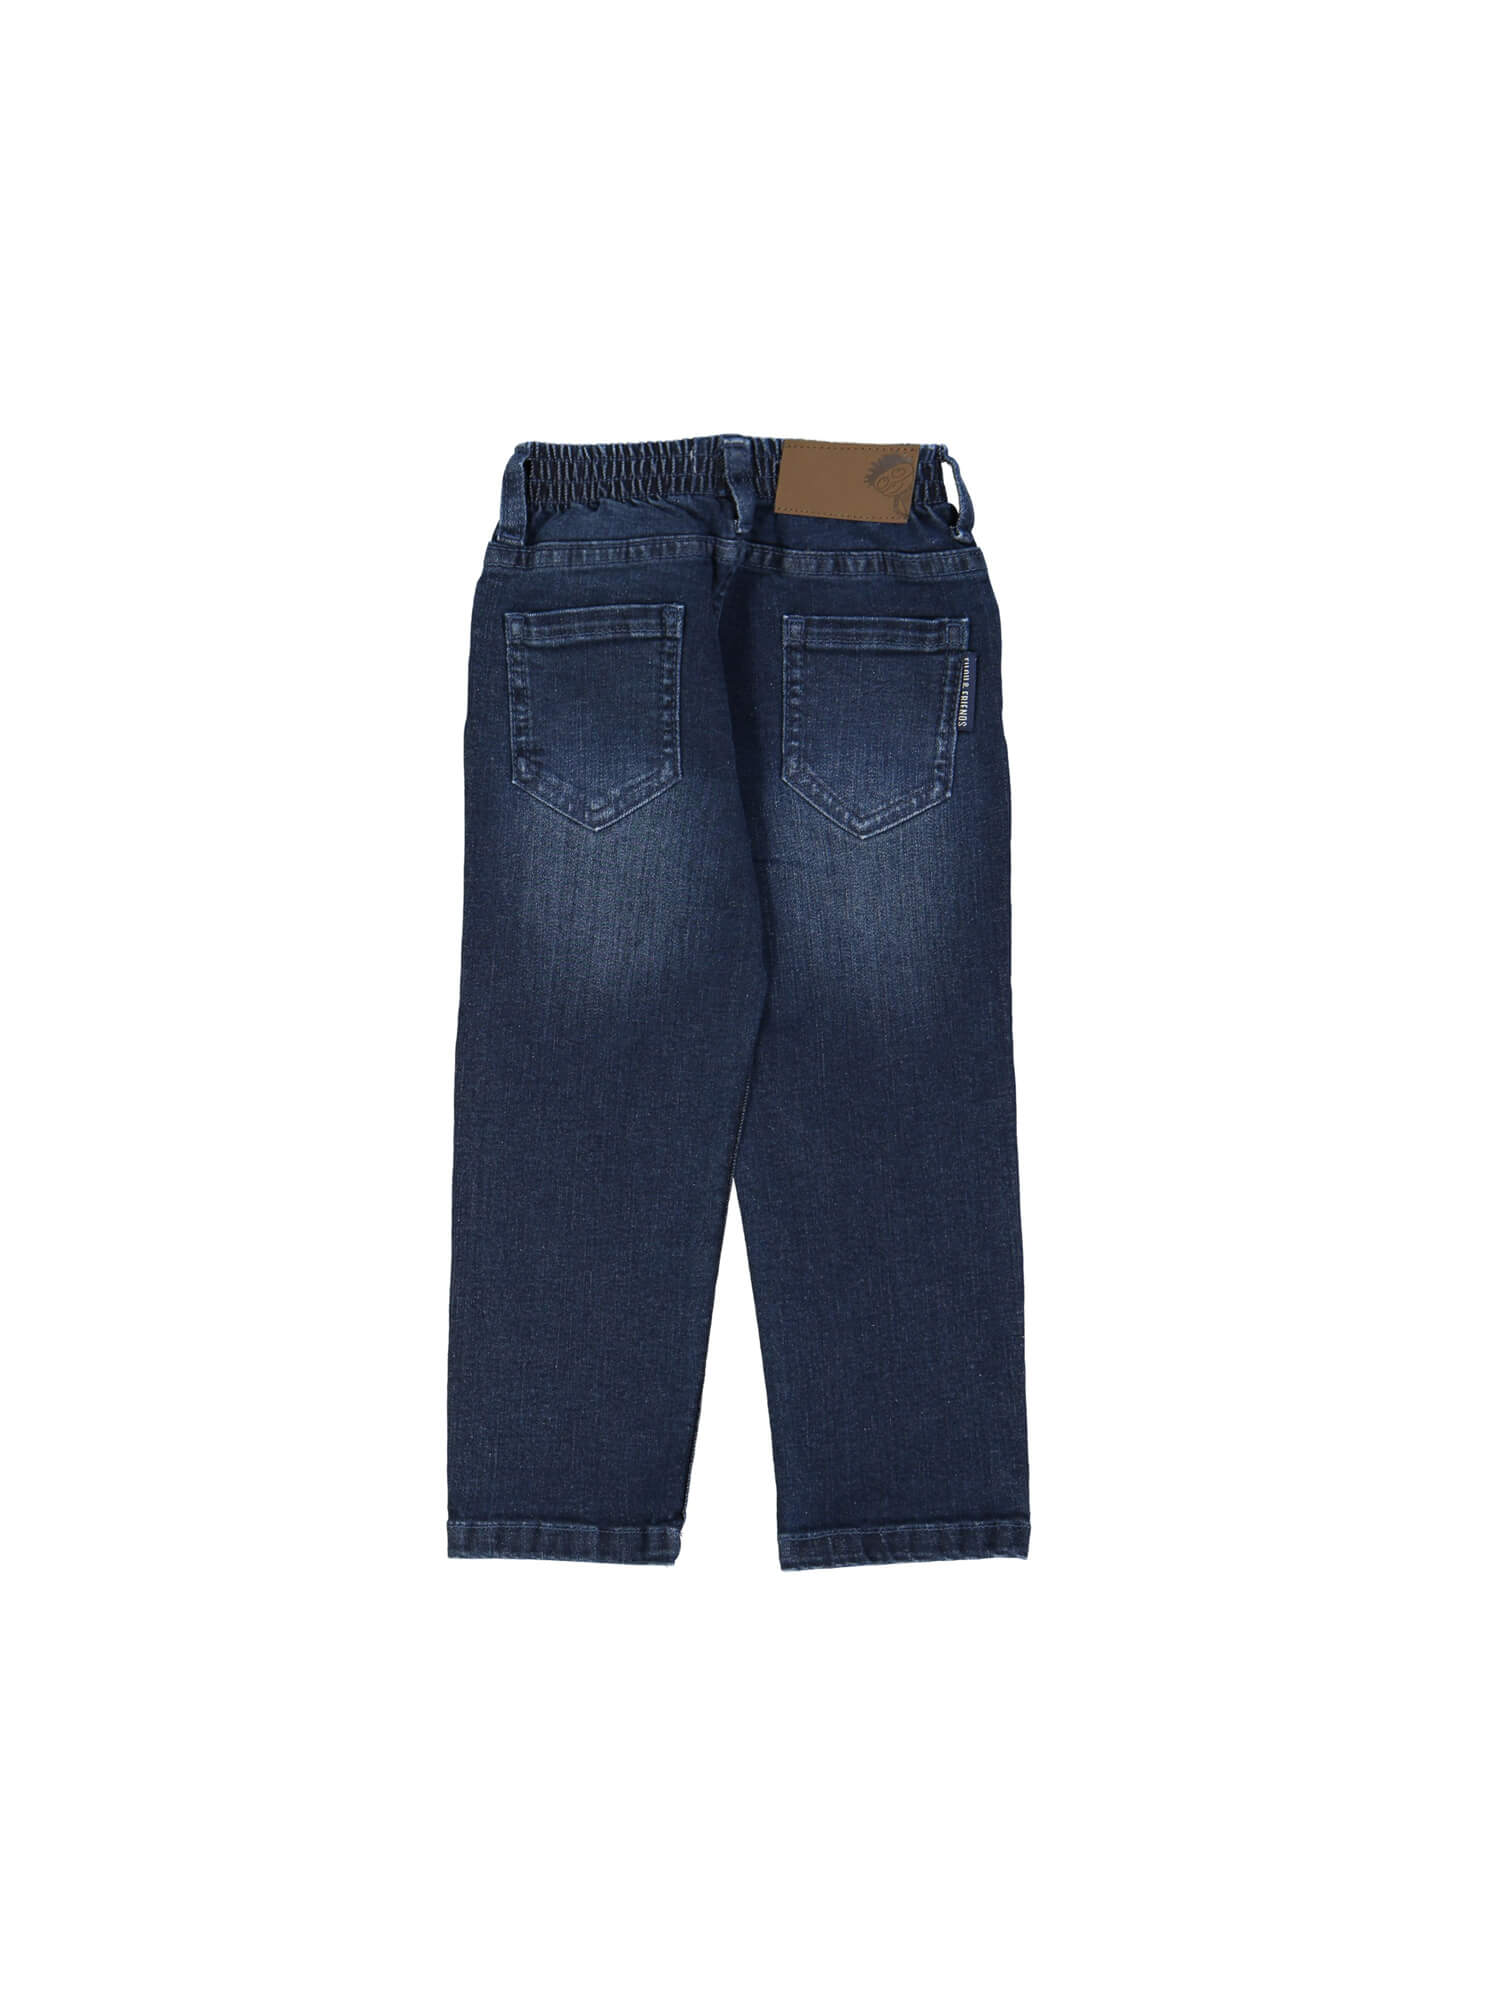 jeans regular blauw rekker 04j